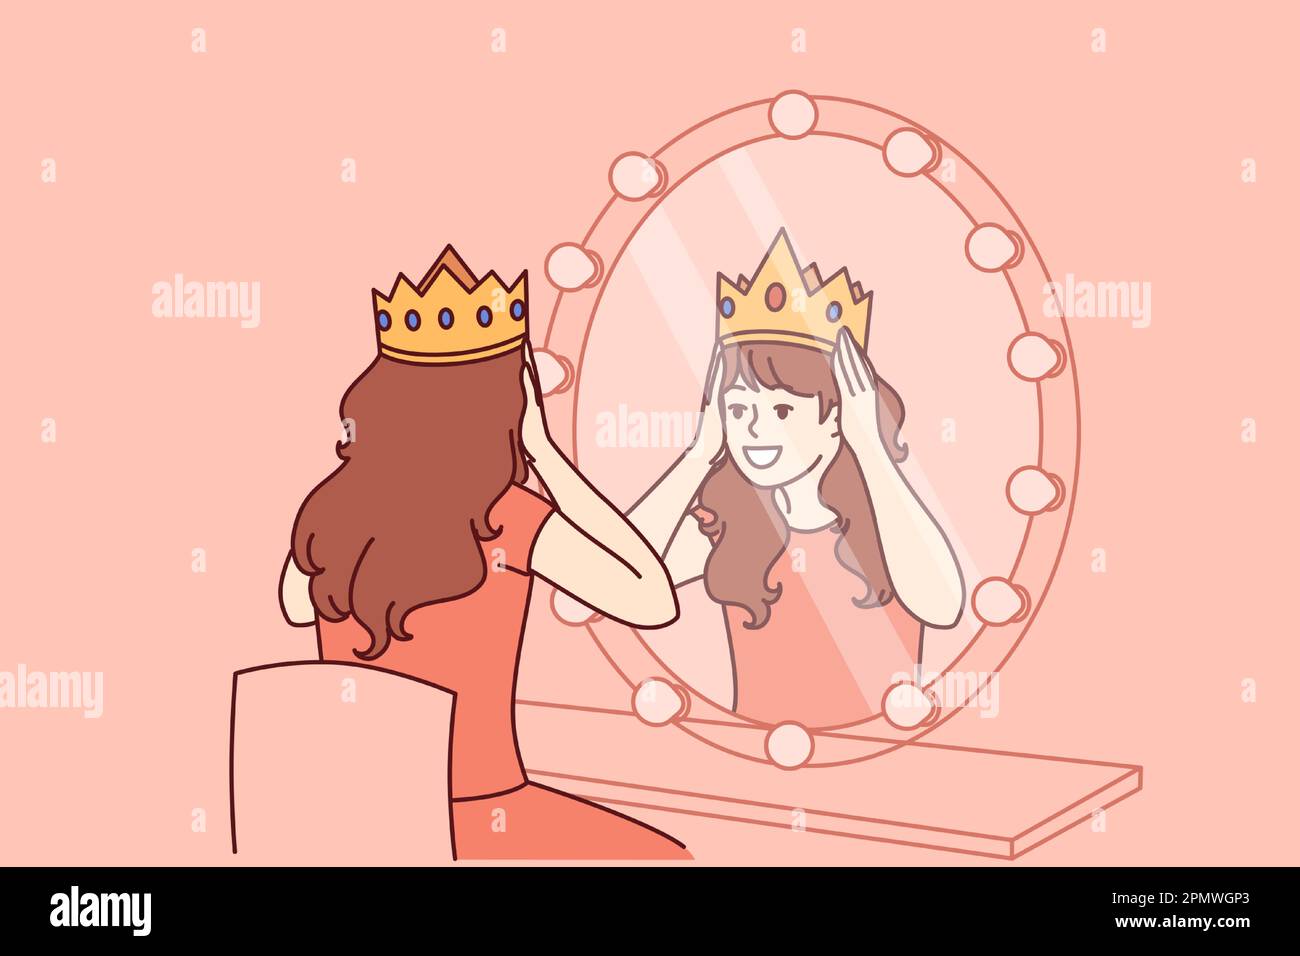 Die kleine Schauspielerin versucht, die Krone im Ankleideraum mit Spiegel zu tragen und träumt davon, die Rolle der Prinzessin auf der Theaterbühne zu spielen. Ein Teenager setzt die Prinzessinnenkrone auf den Kopf und träumt davon, unter Königen zu leben Stock Vektor